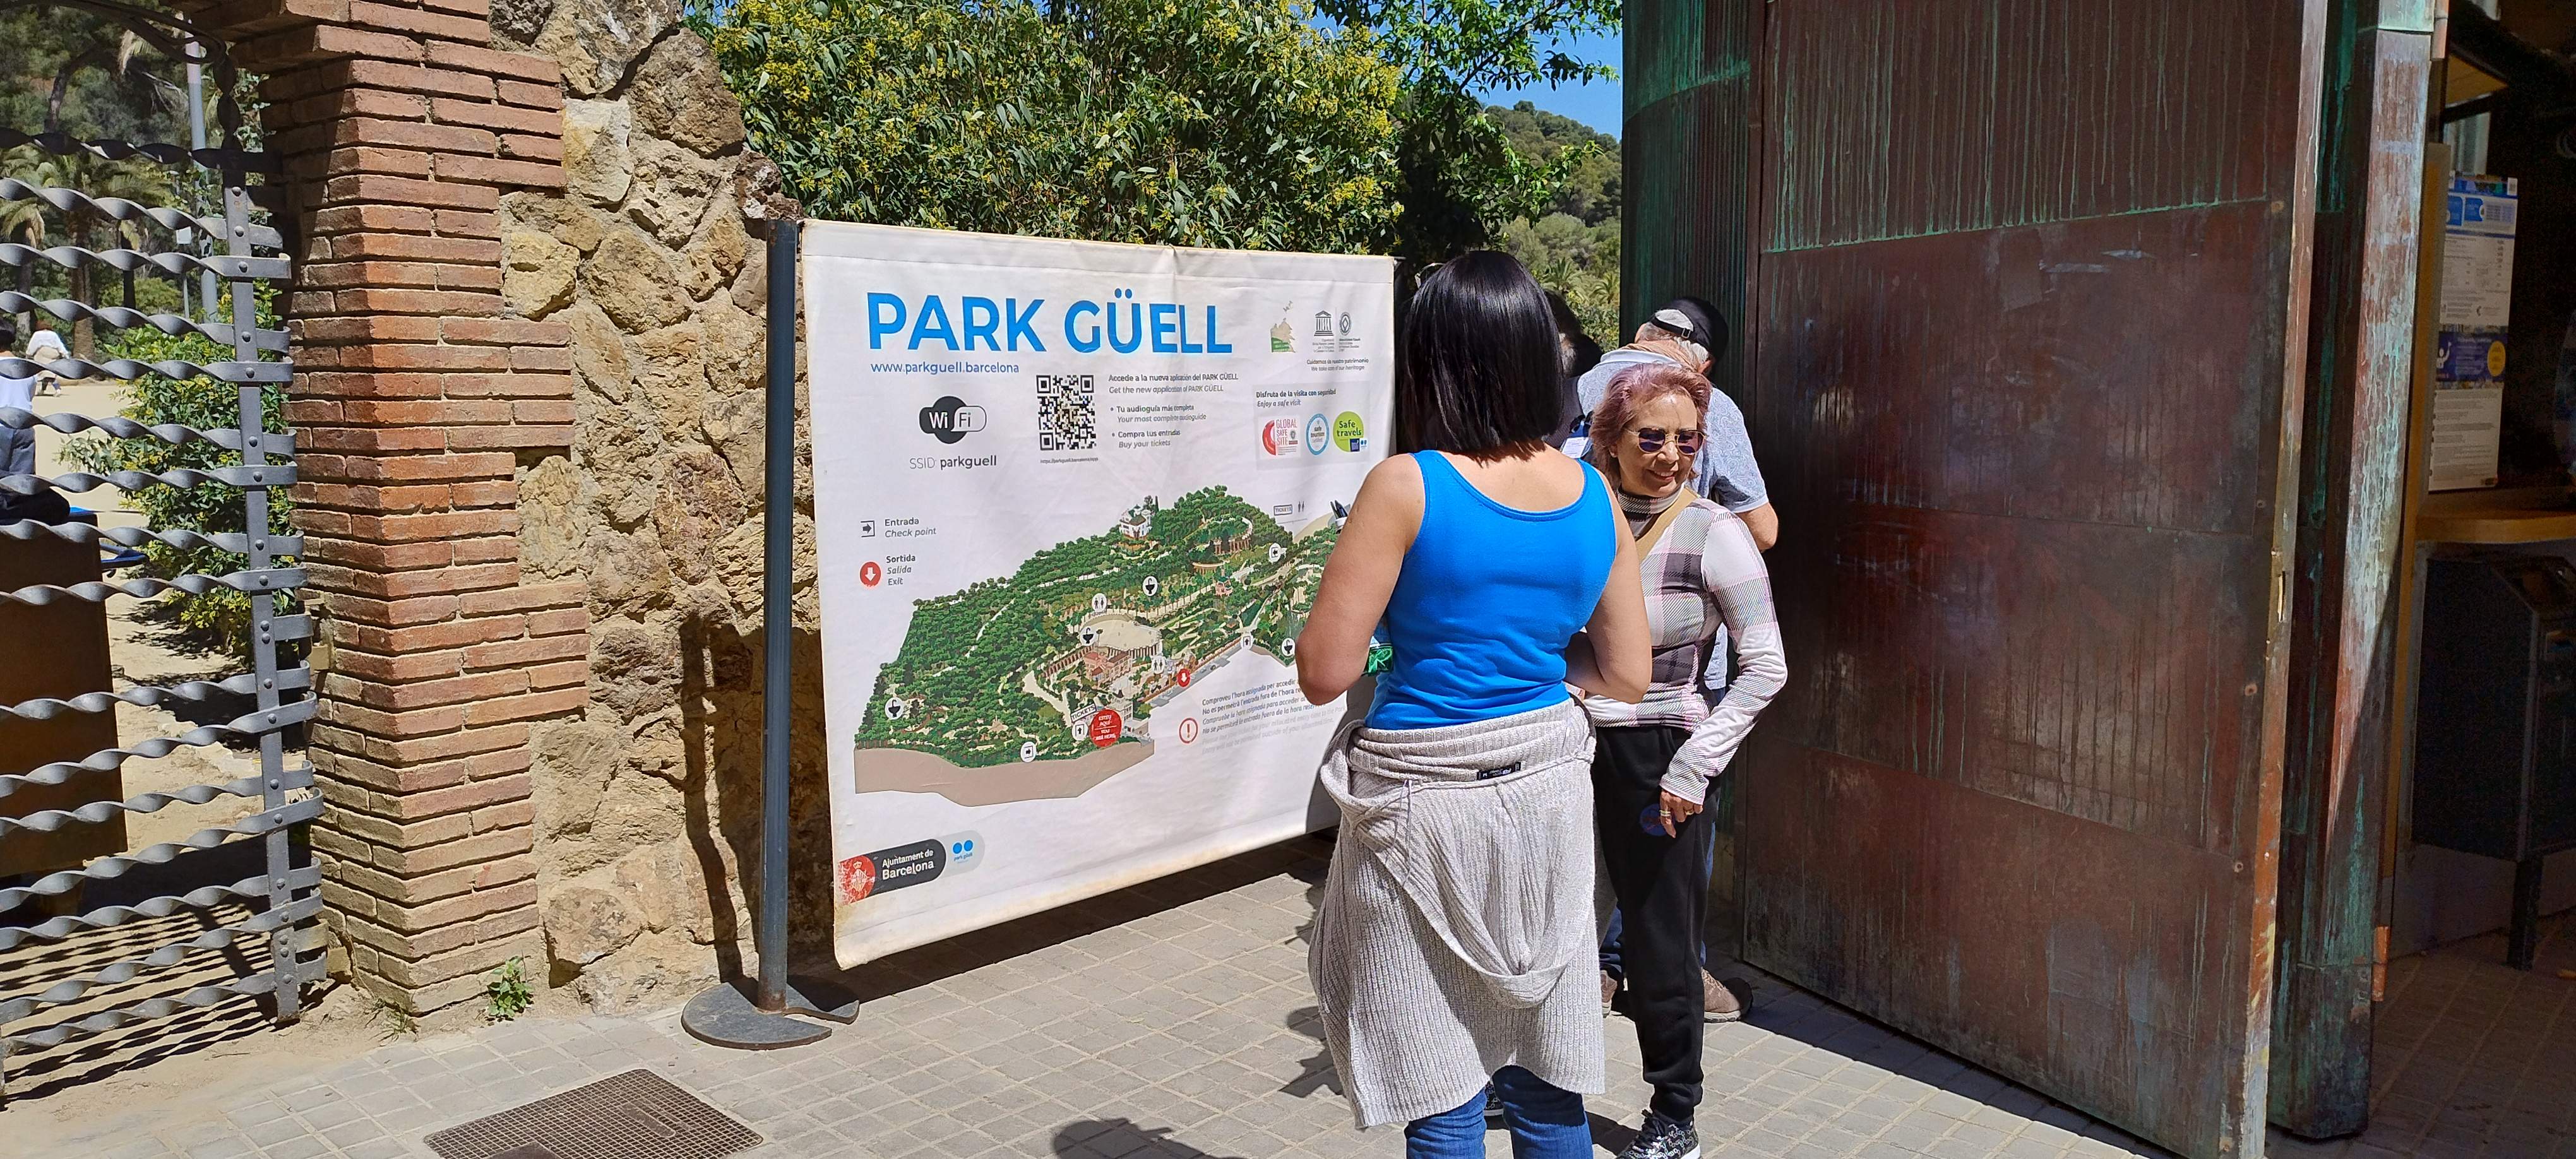 Les entrades del Park Güell es vendran exclusivament per internet a partir de l’1 de juliol